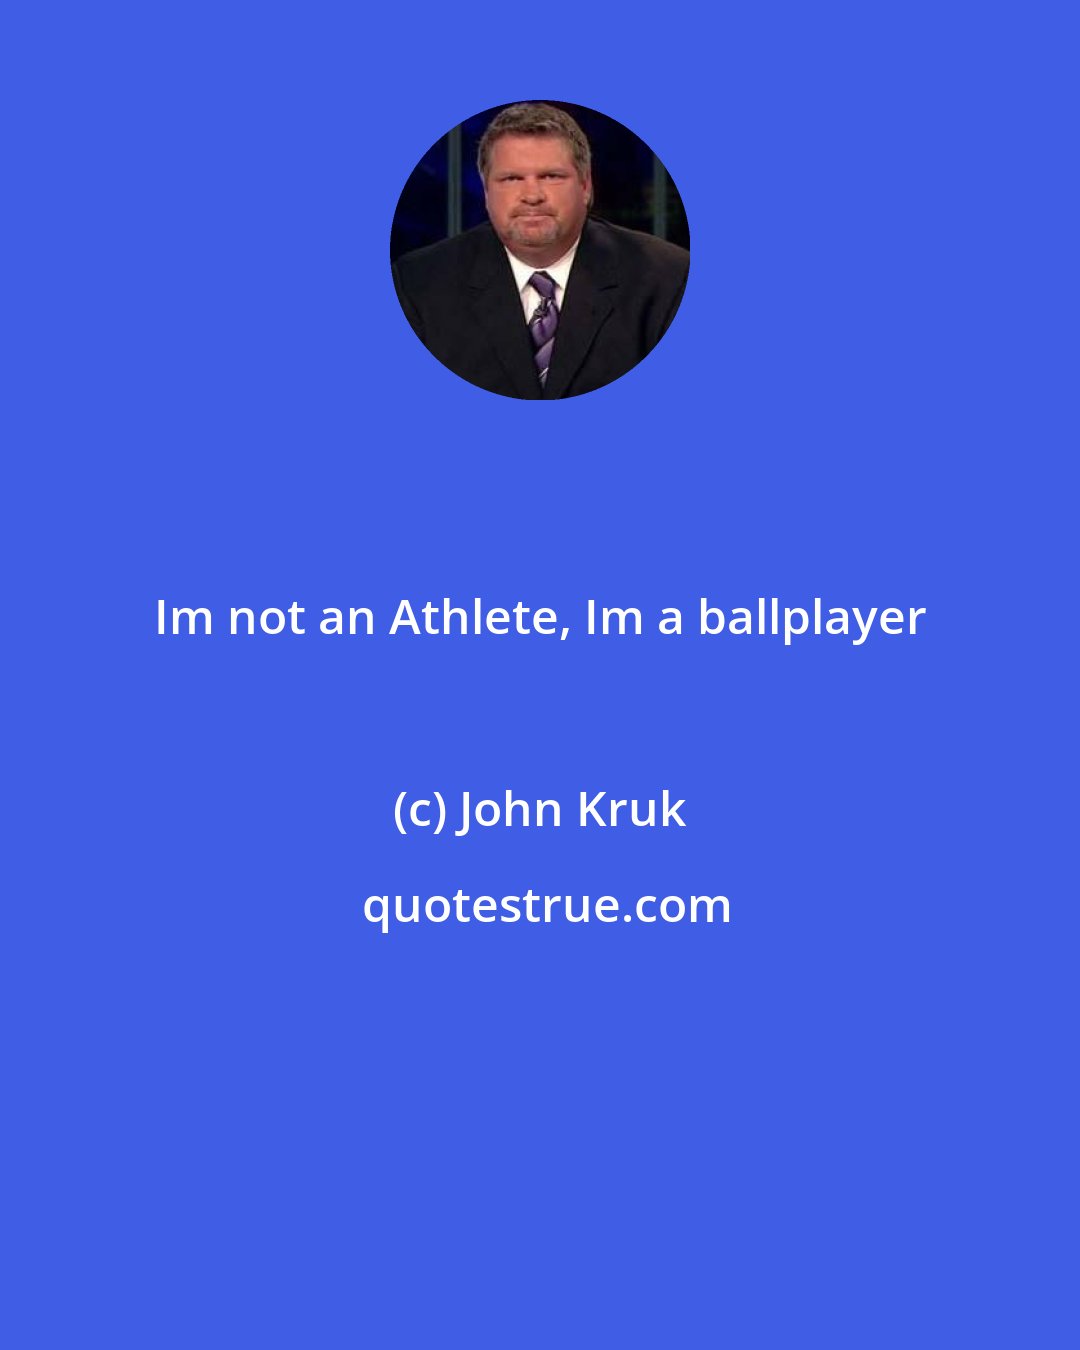 John Kruk: Im not an Athlete, Im a ballplayer